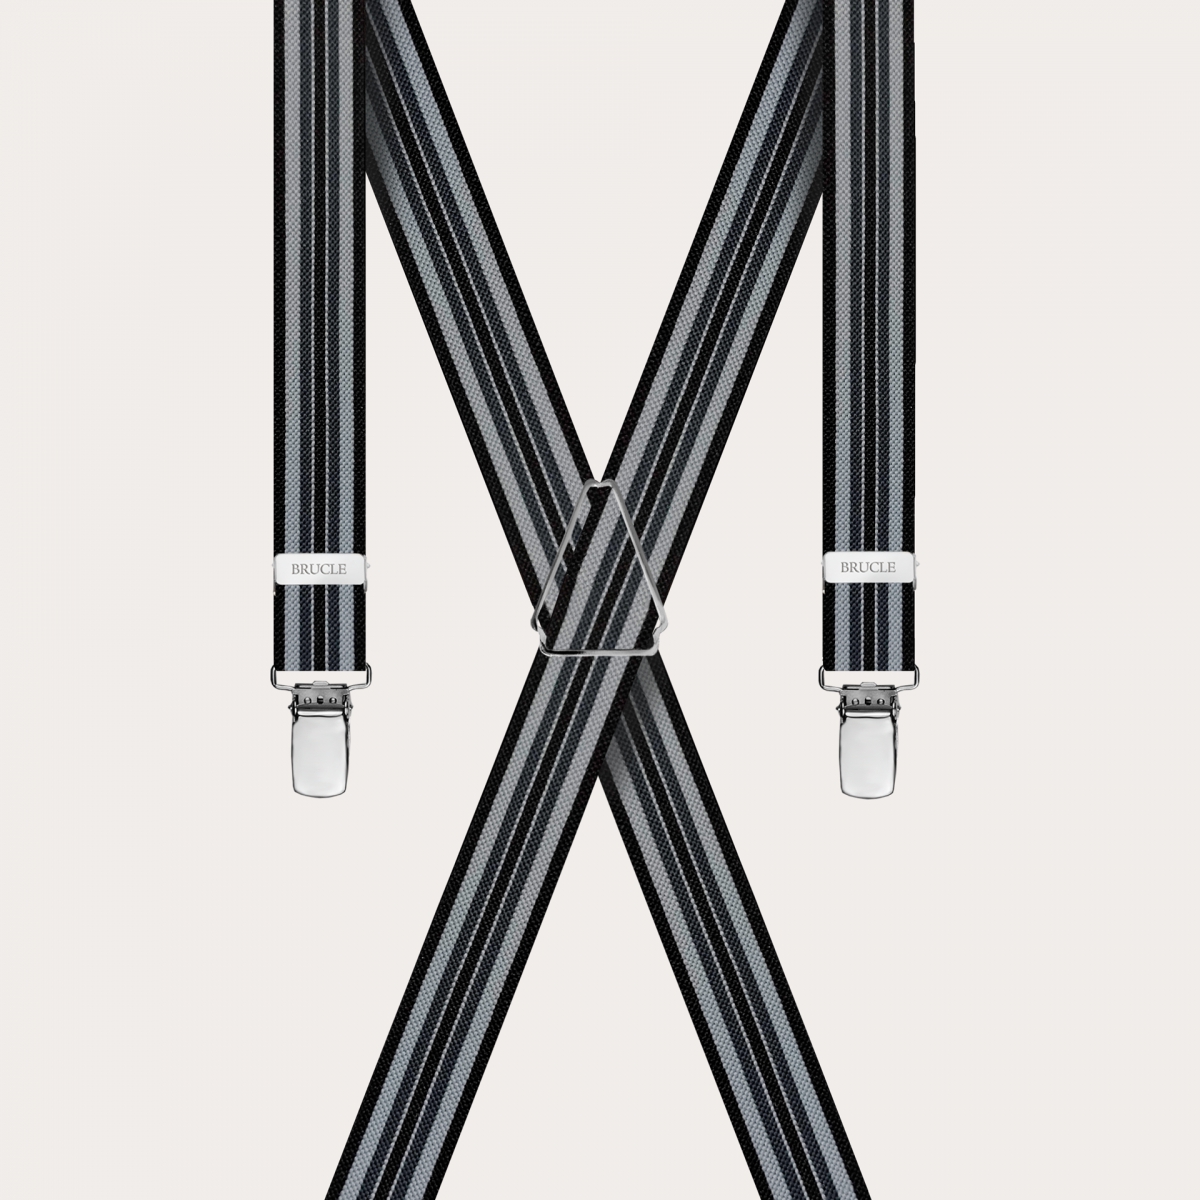 BRUCLE Stylische gestreifte Hosenträger in X-Form in Schwarz- und Grautönen